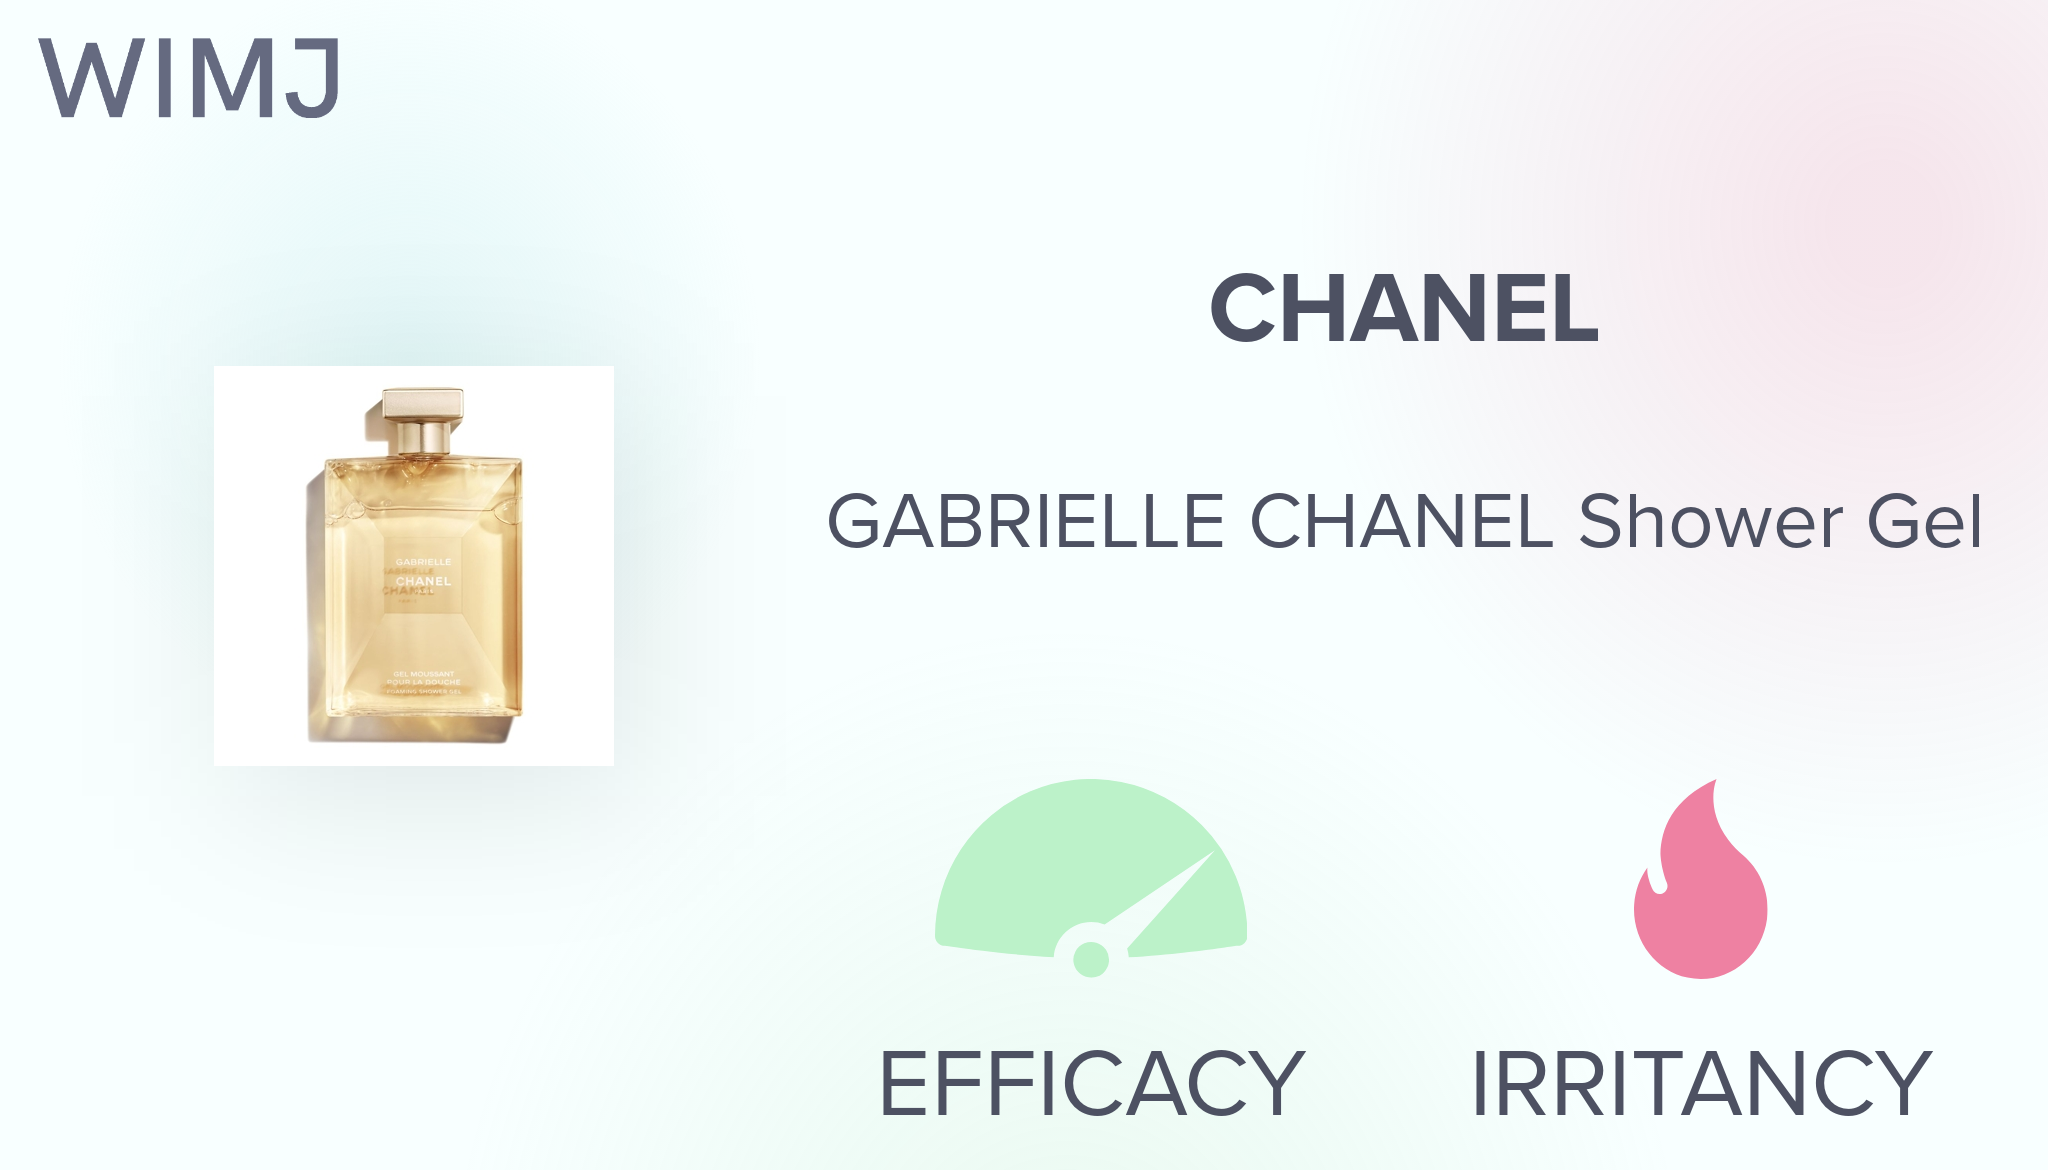 Gabrielle Chanel Foaming Shower Gel